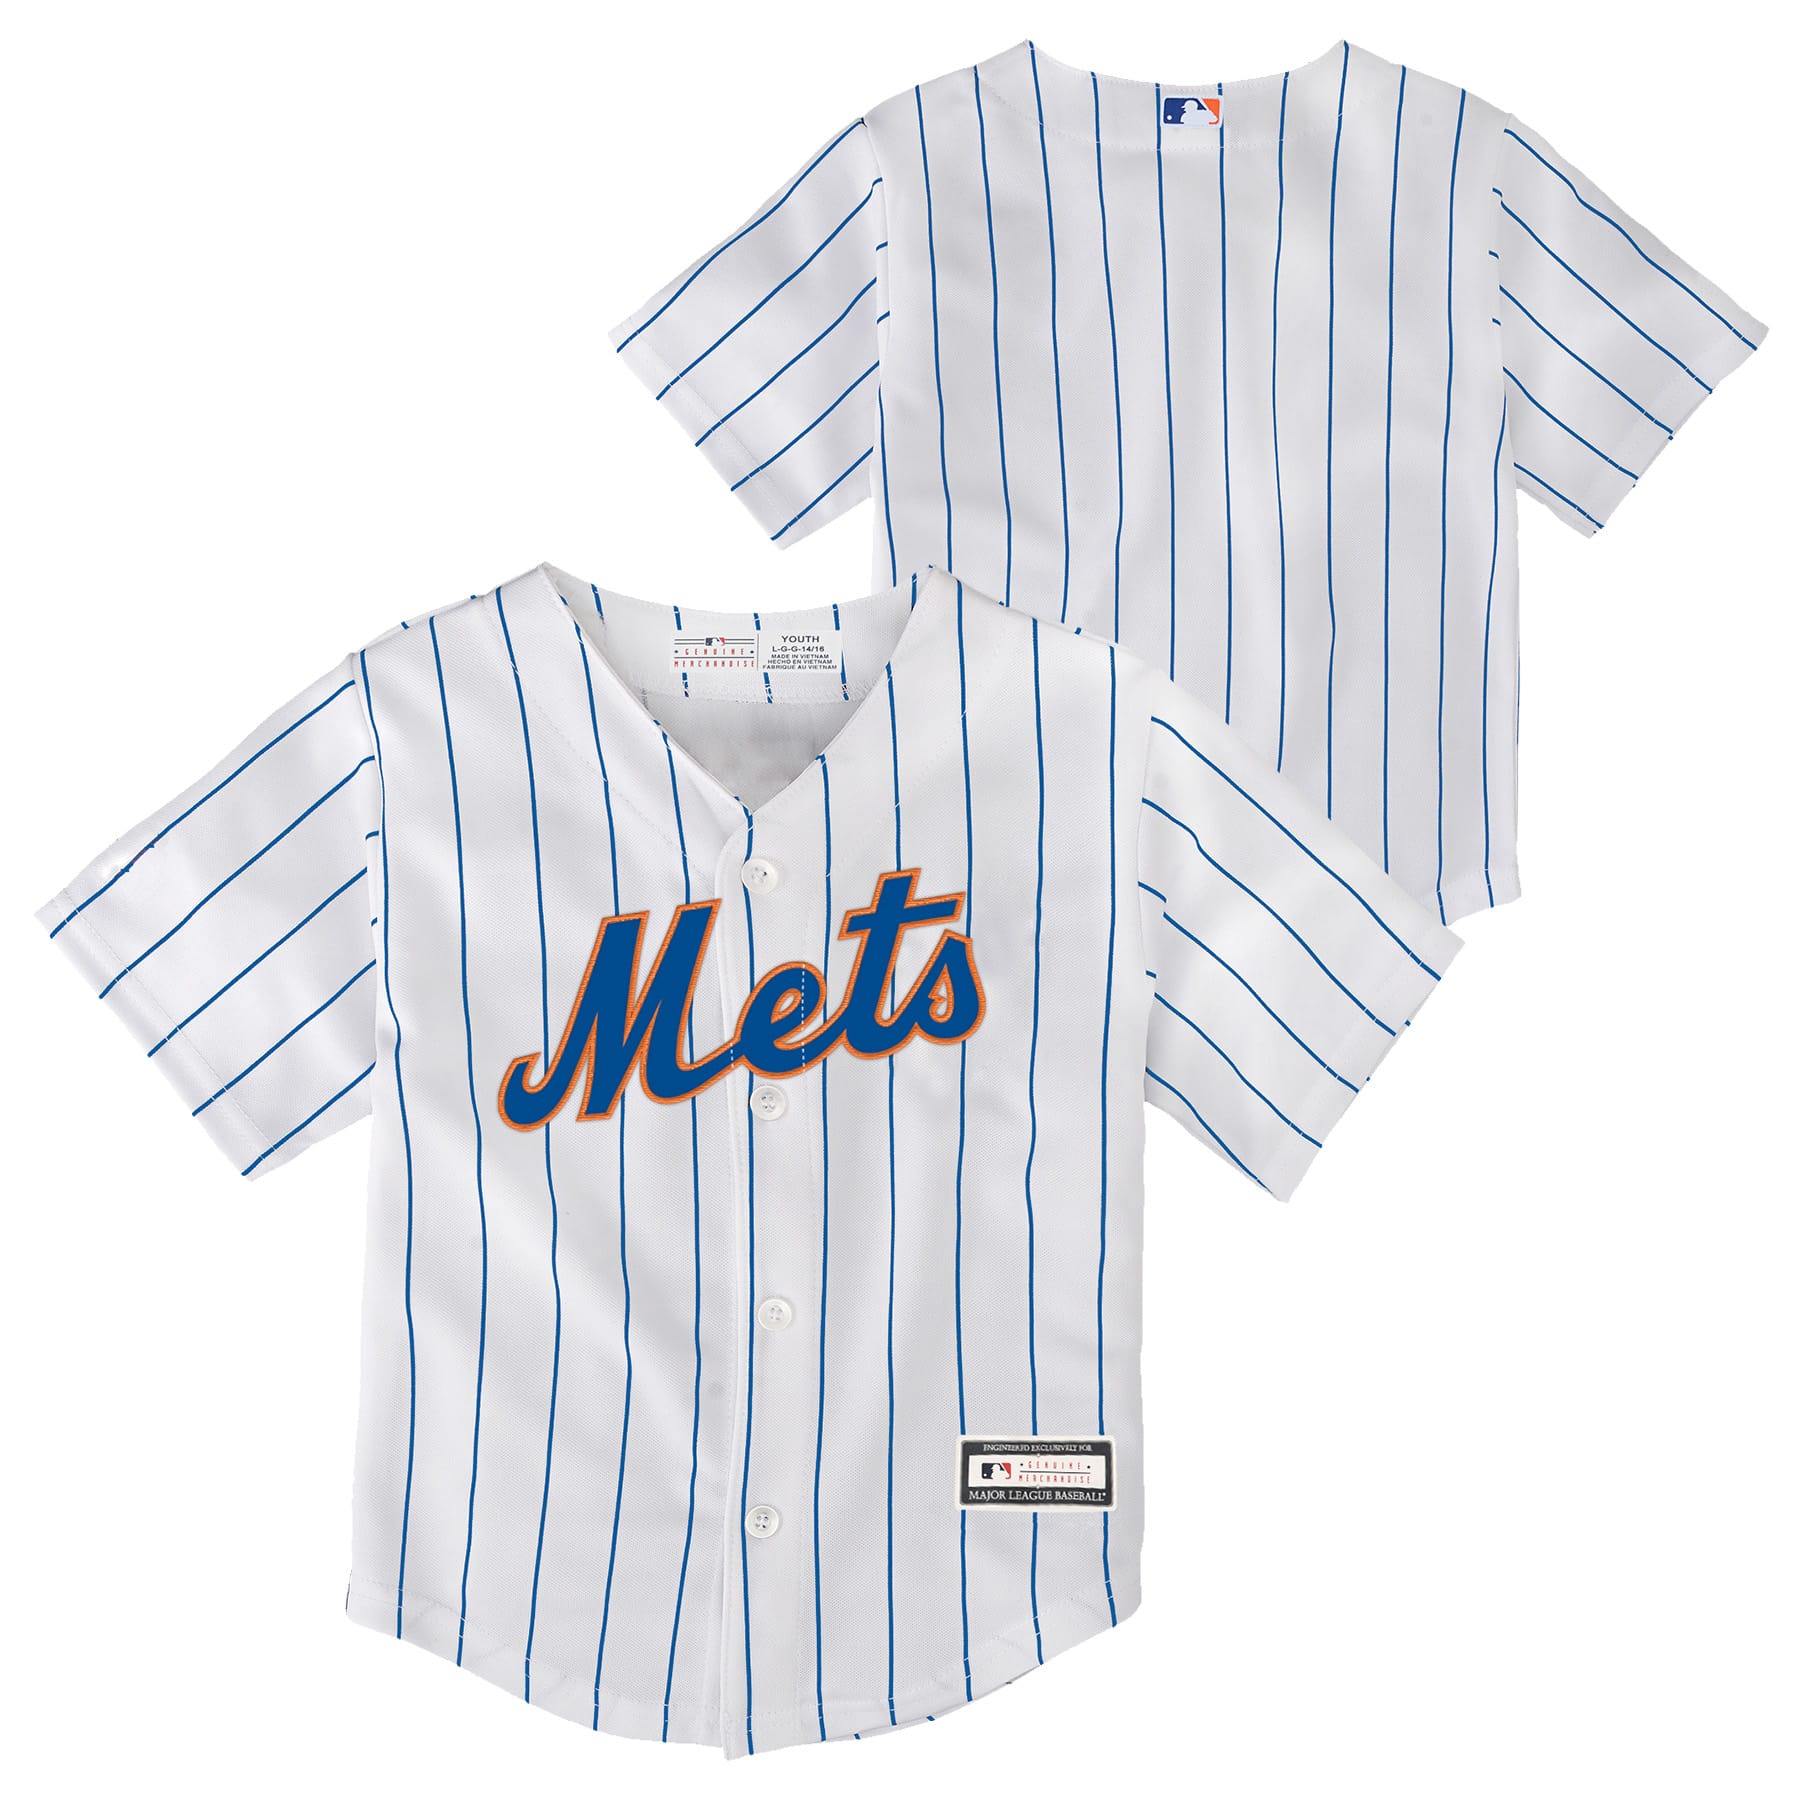 MLB New York Mets Toddler Boys' 2pk T-Shirt - 2T